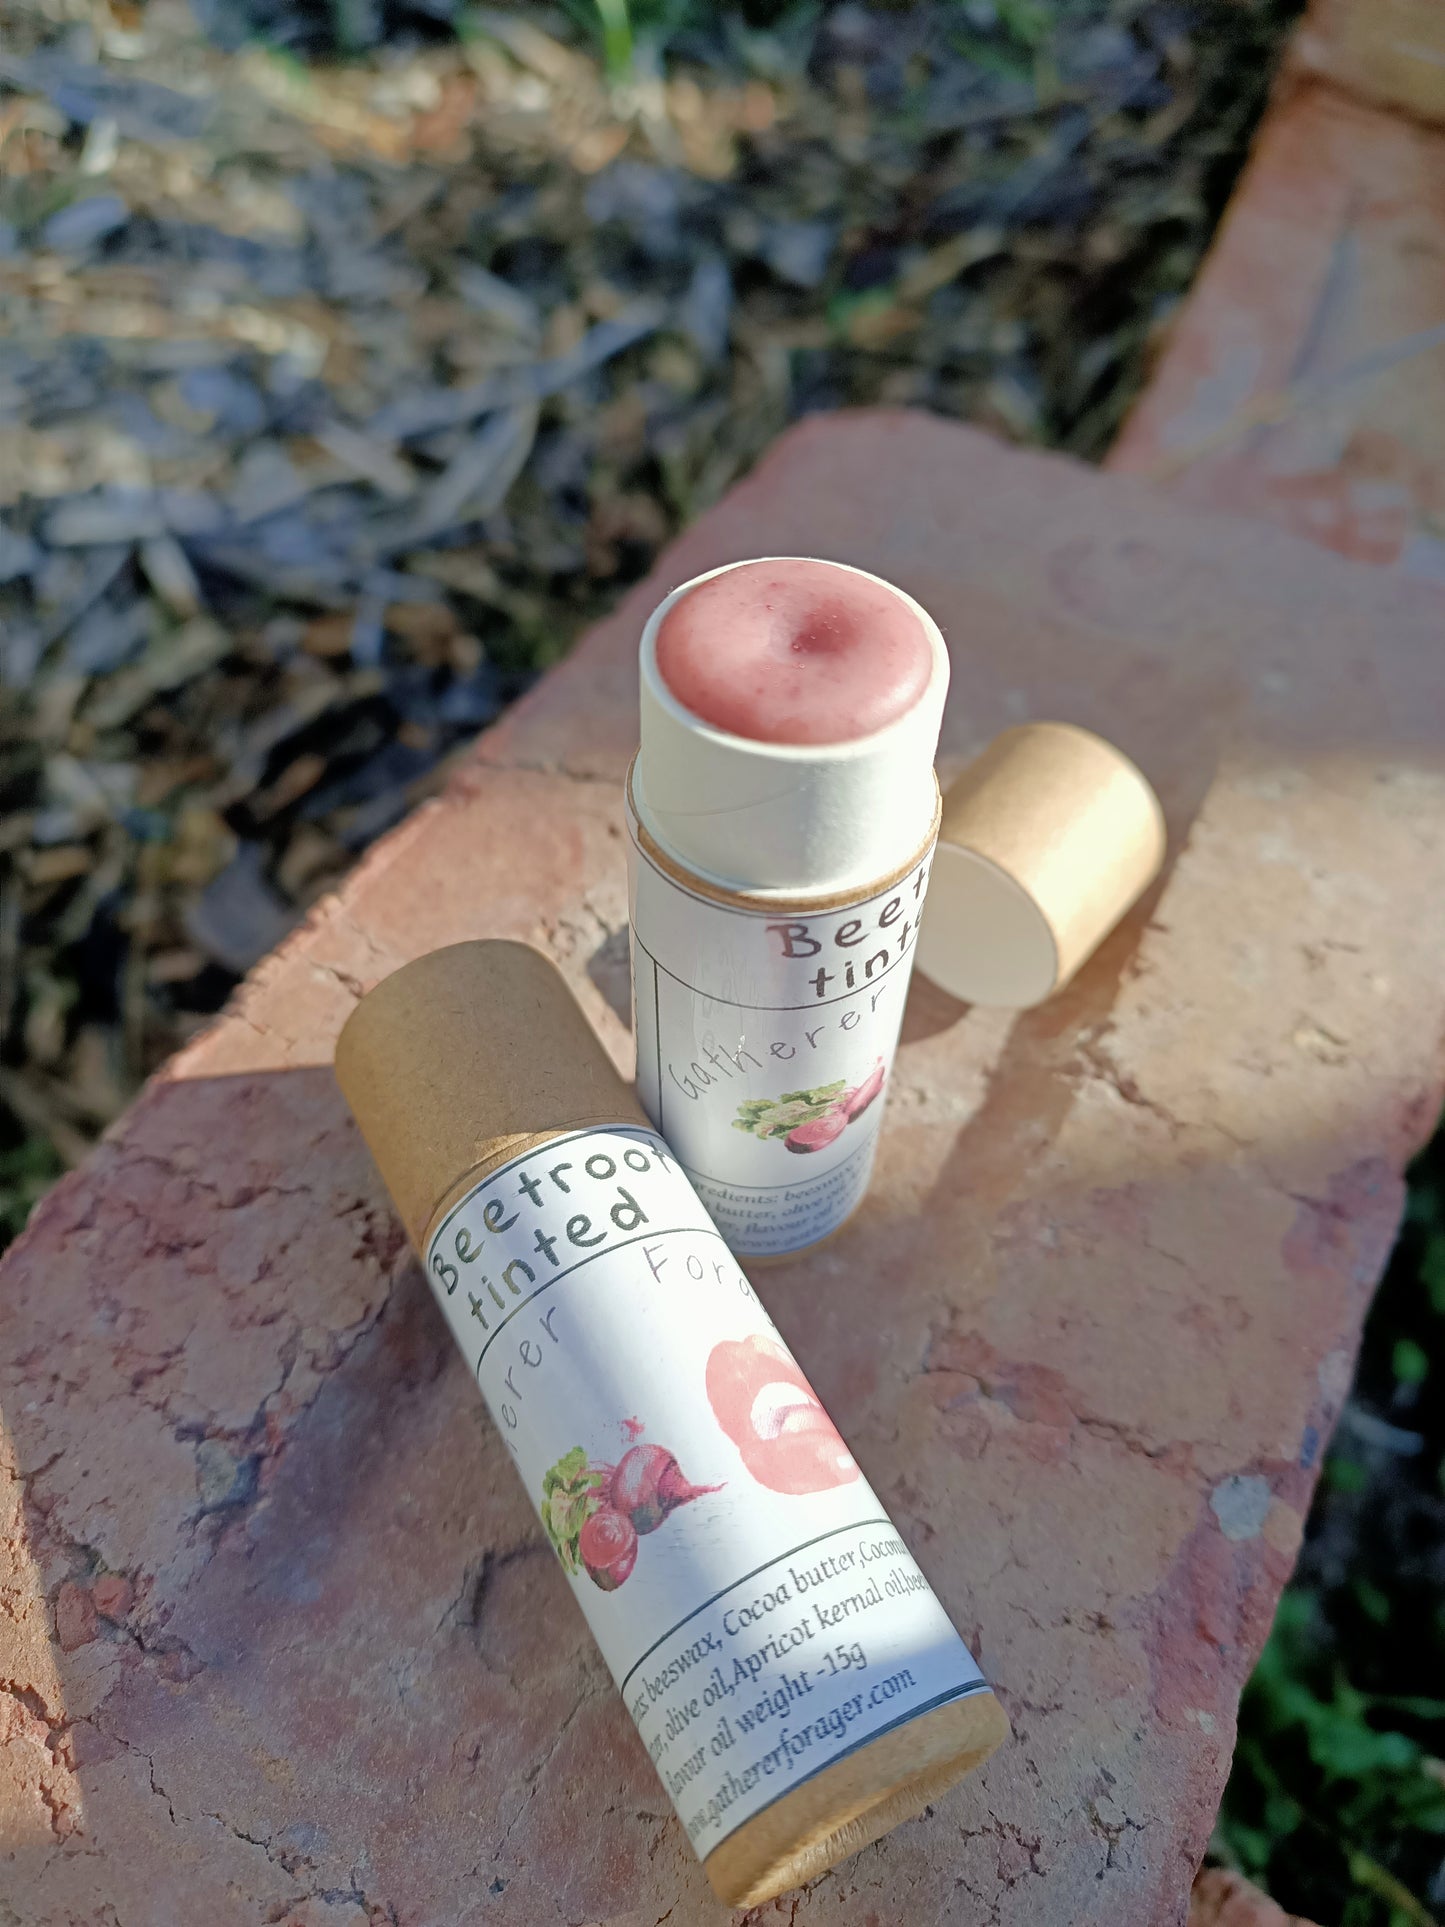 Beetroot tinted lip gloss